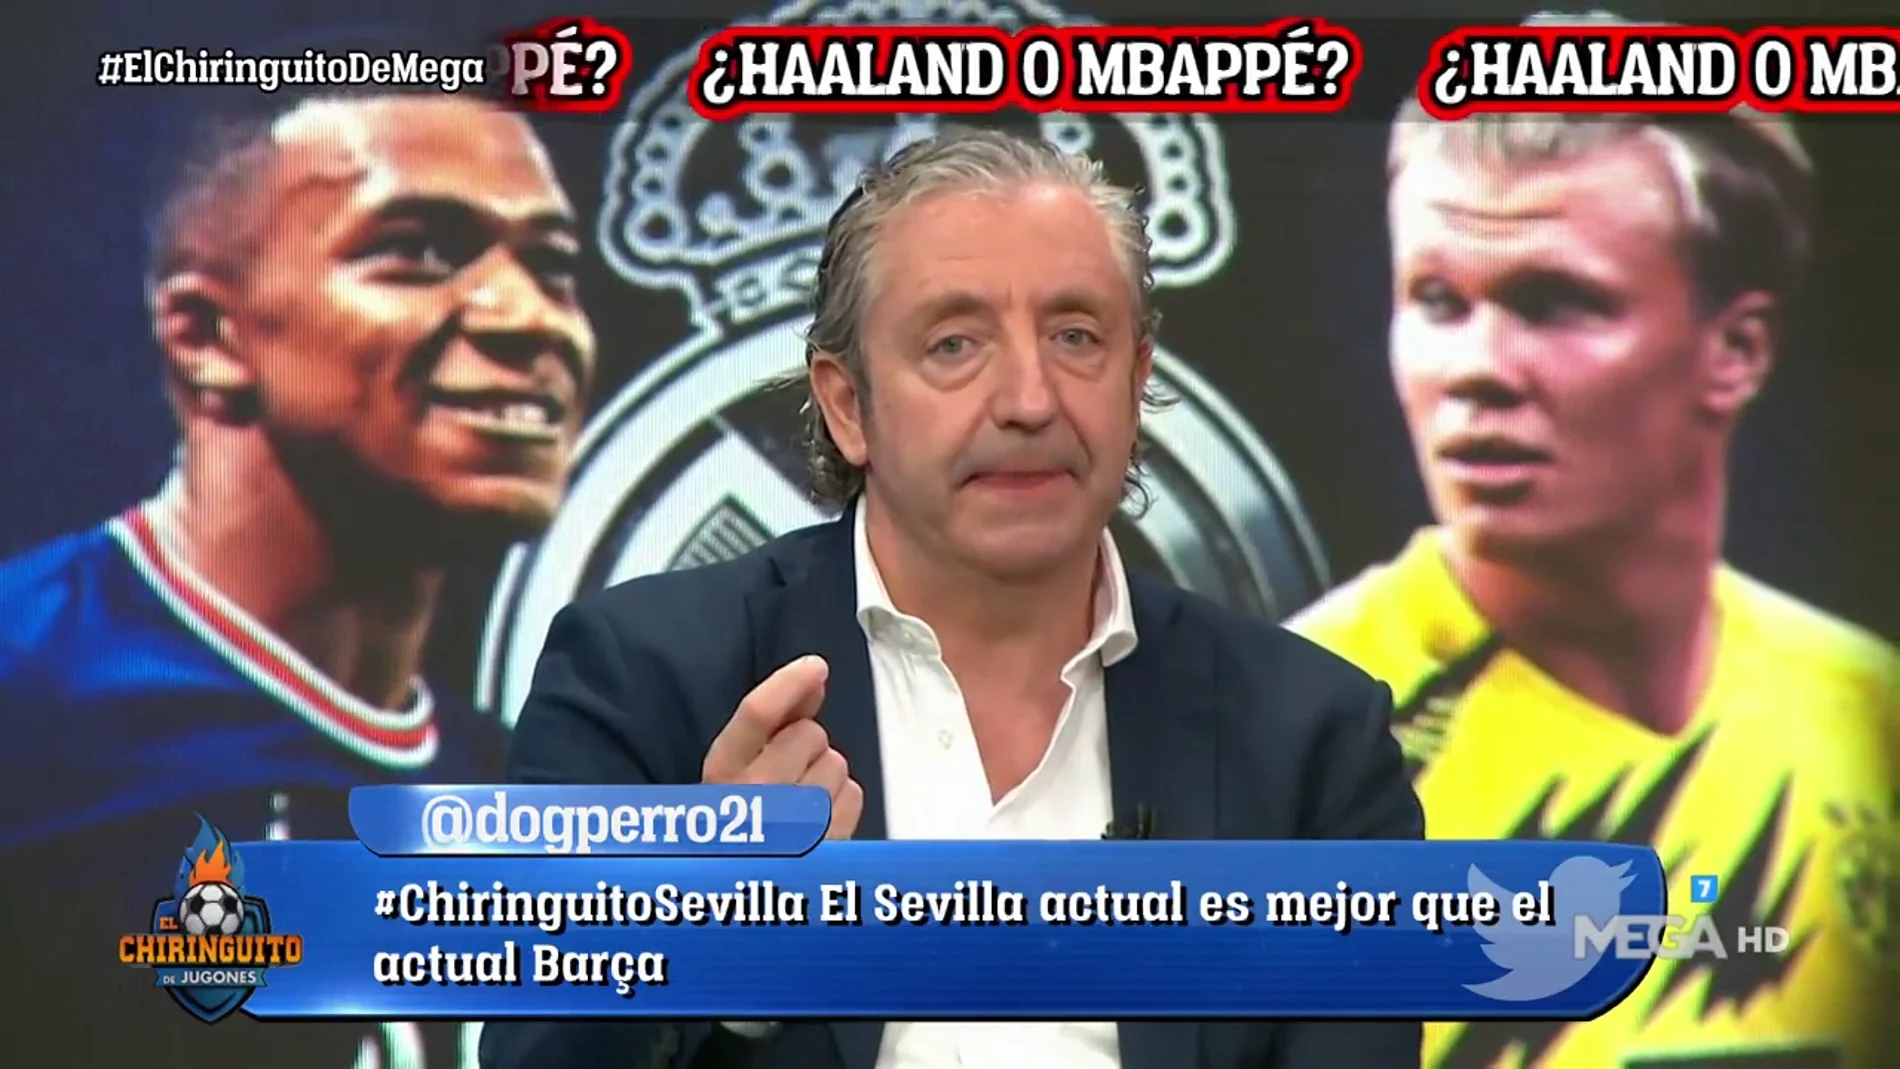 Josep Pedrerol: "El Madrid cerrará a Mbappé y después irá a por Haaland"